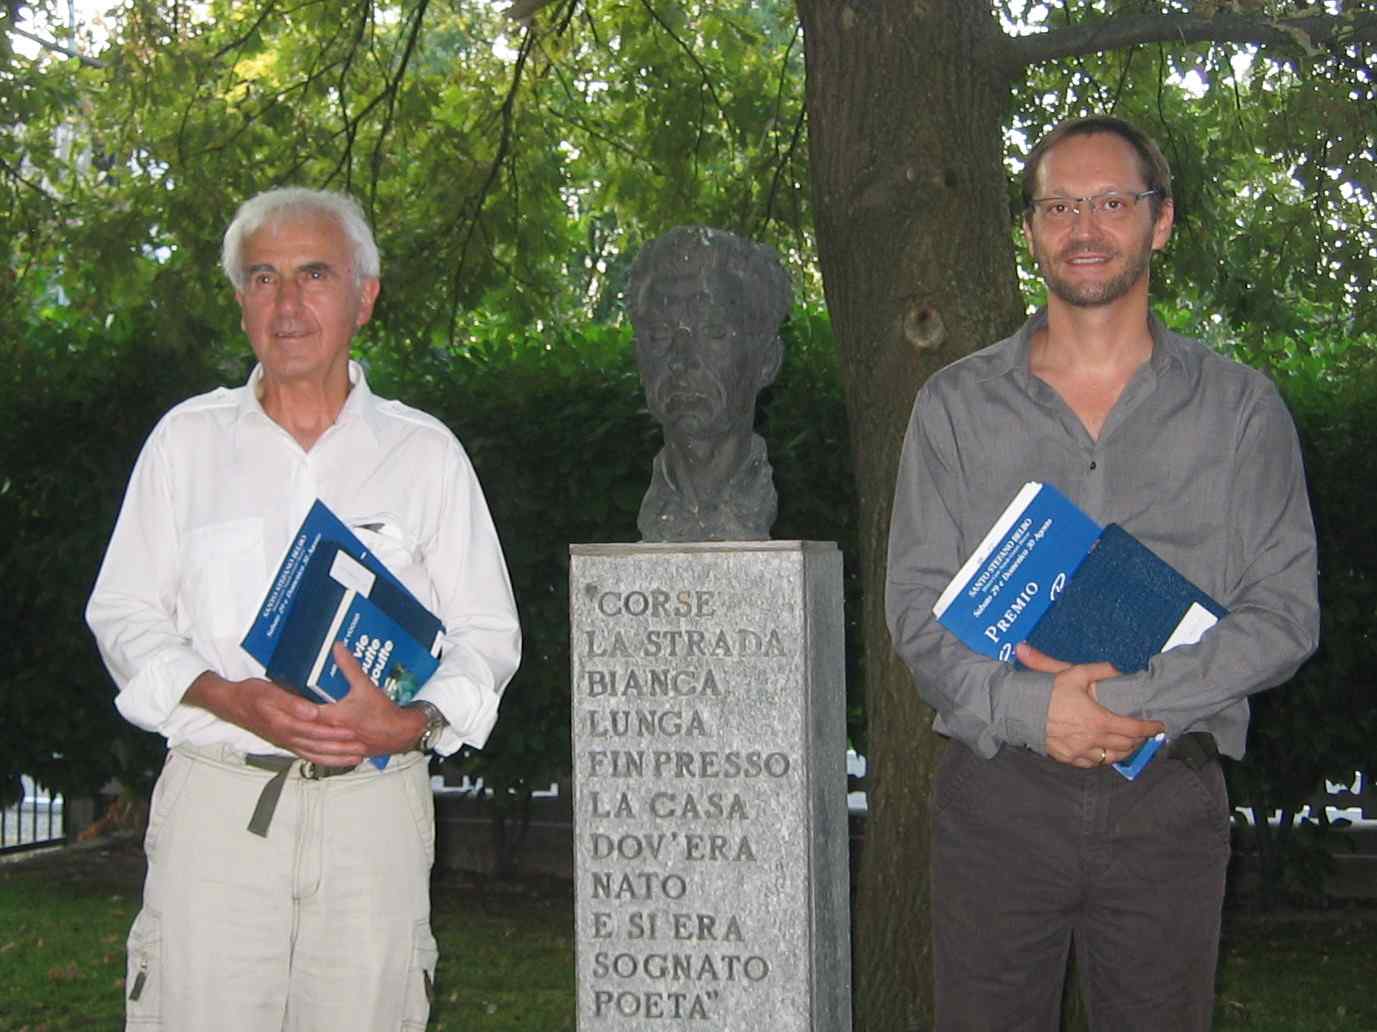 Les Dr Lecoq et Kerempichon, lauréats 2009 des prix Cesare Pavese de la nouvelle et de poésie.